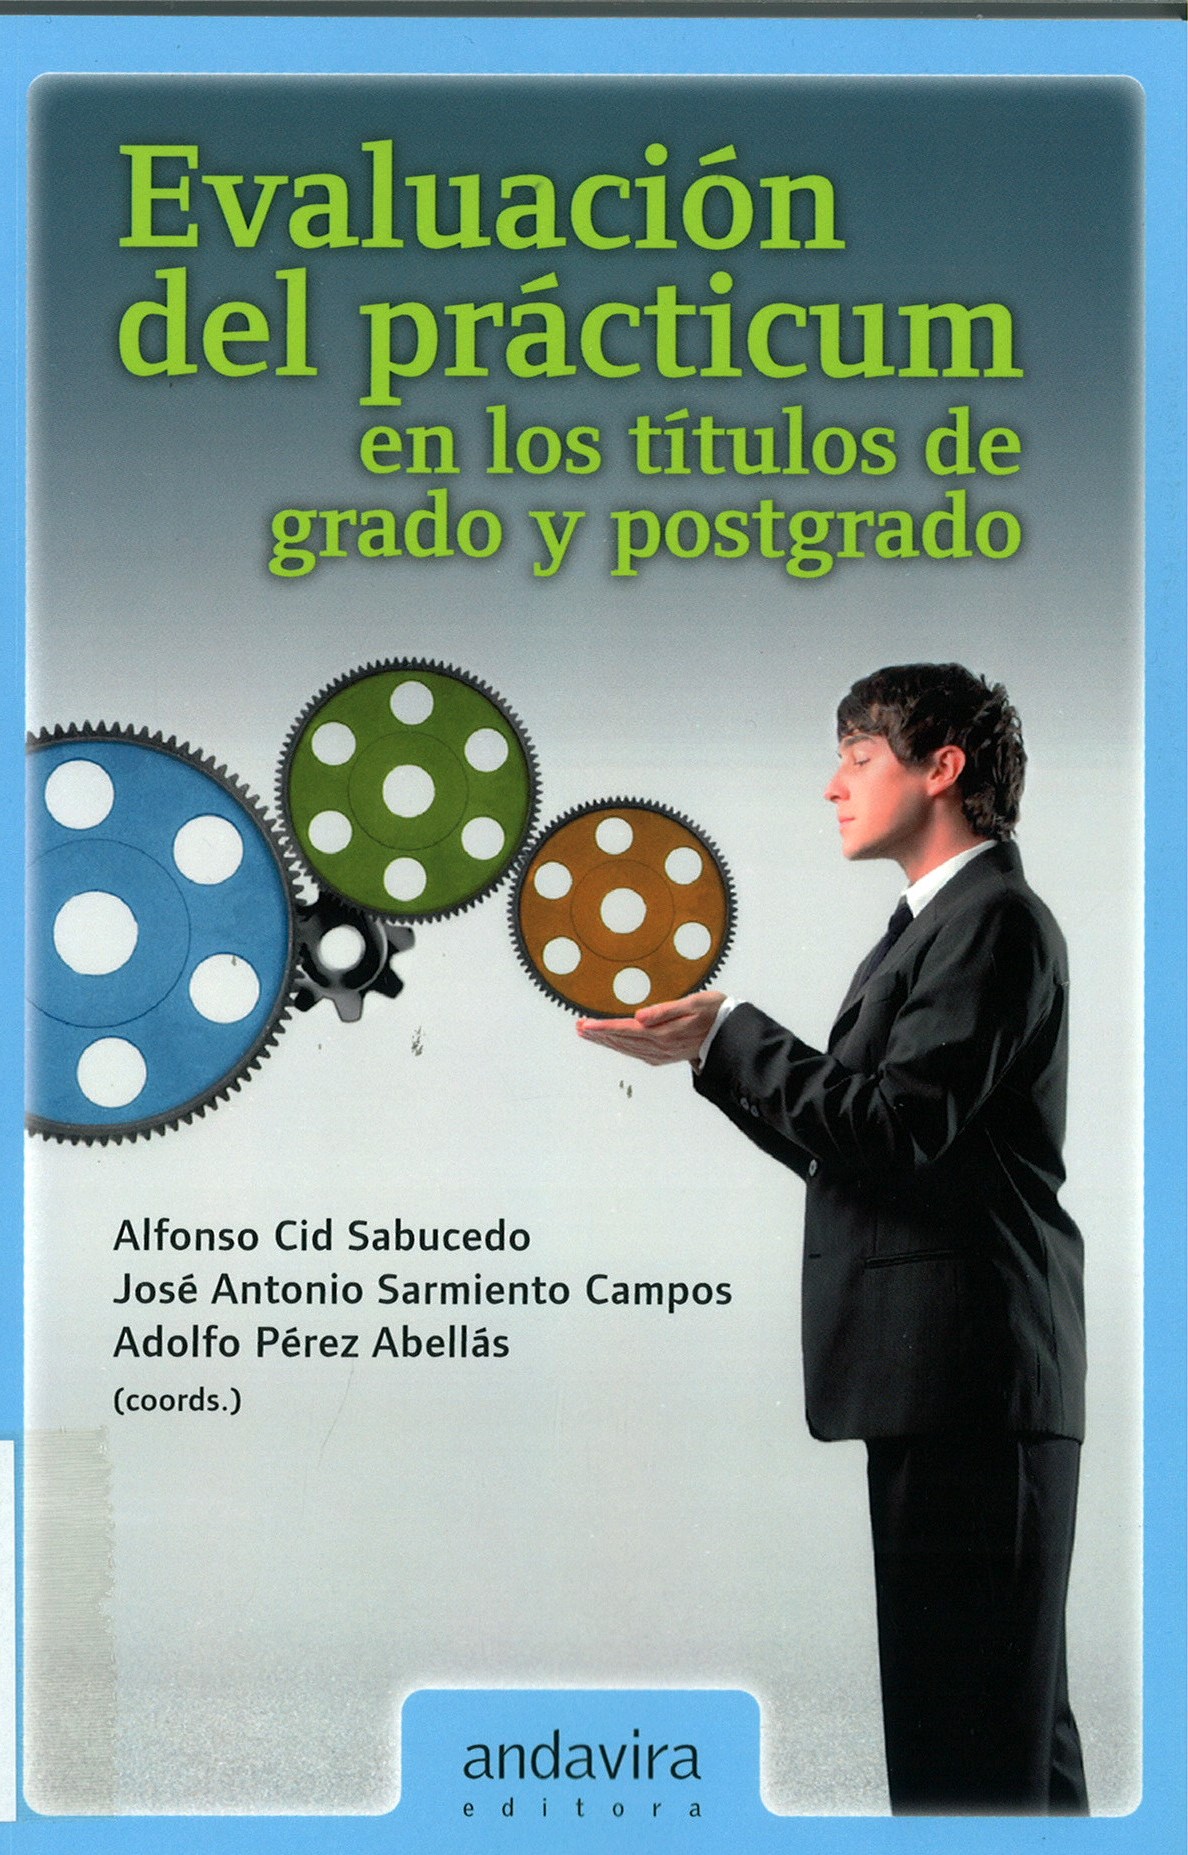 Imagen de portada del libro Evaluación del practicum en los títulos de grado y postgrado